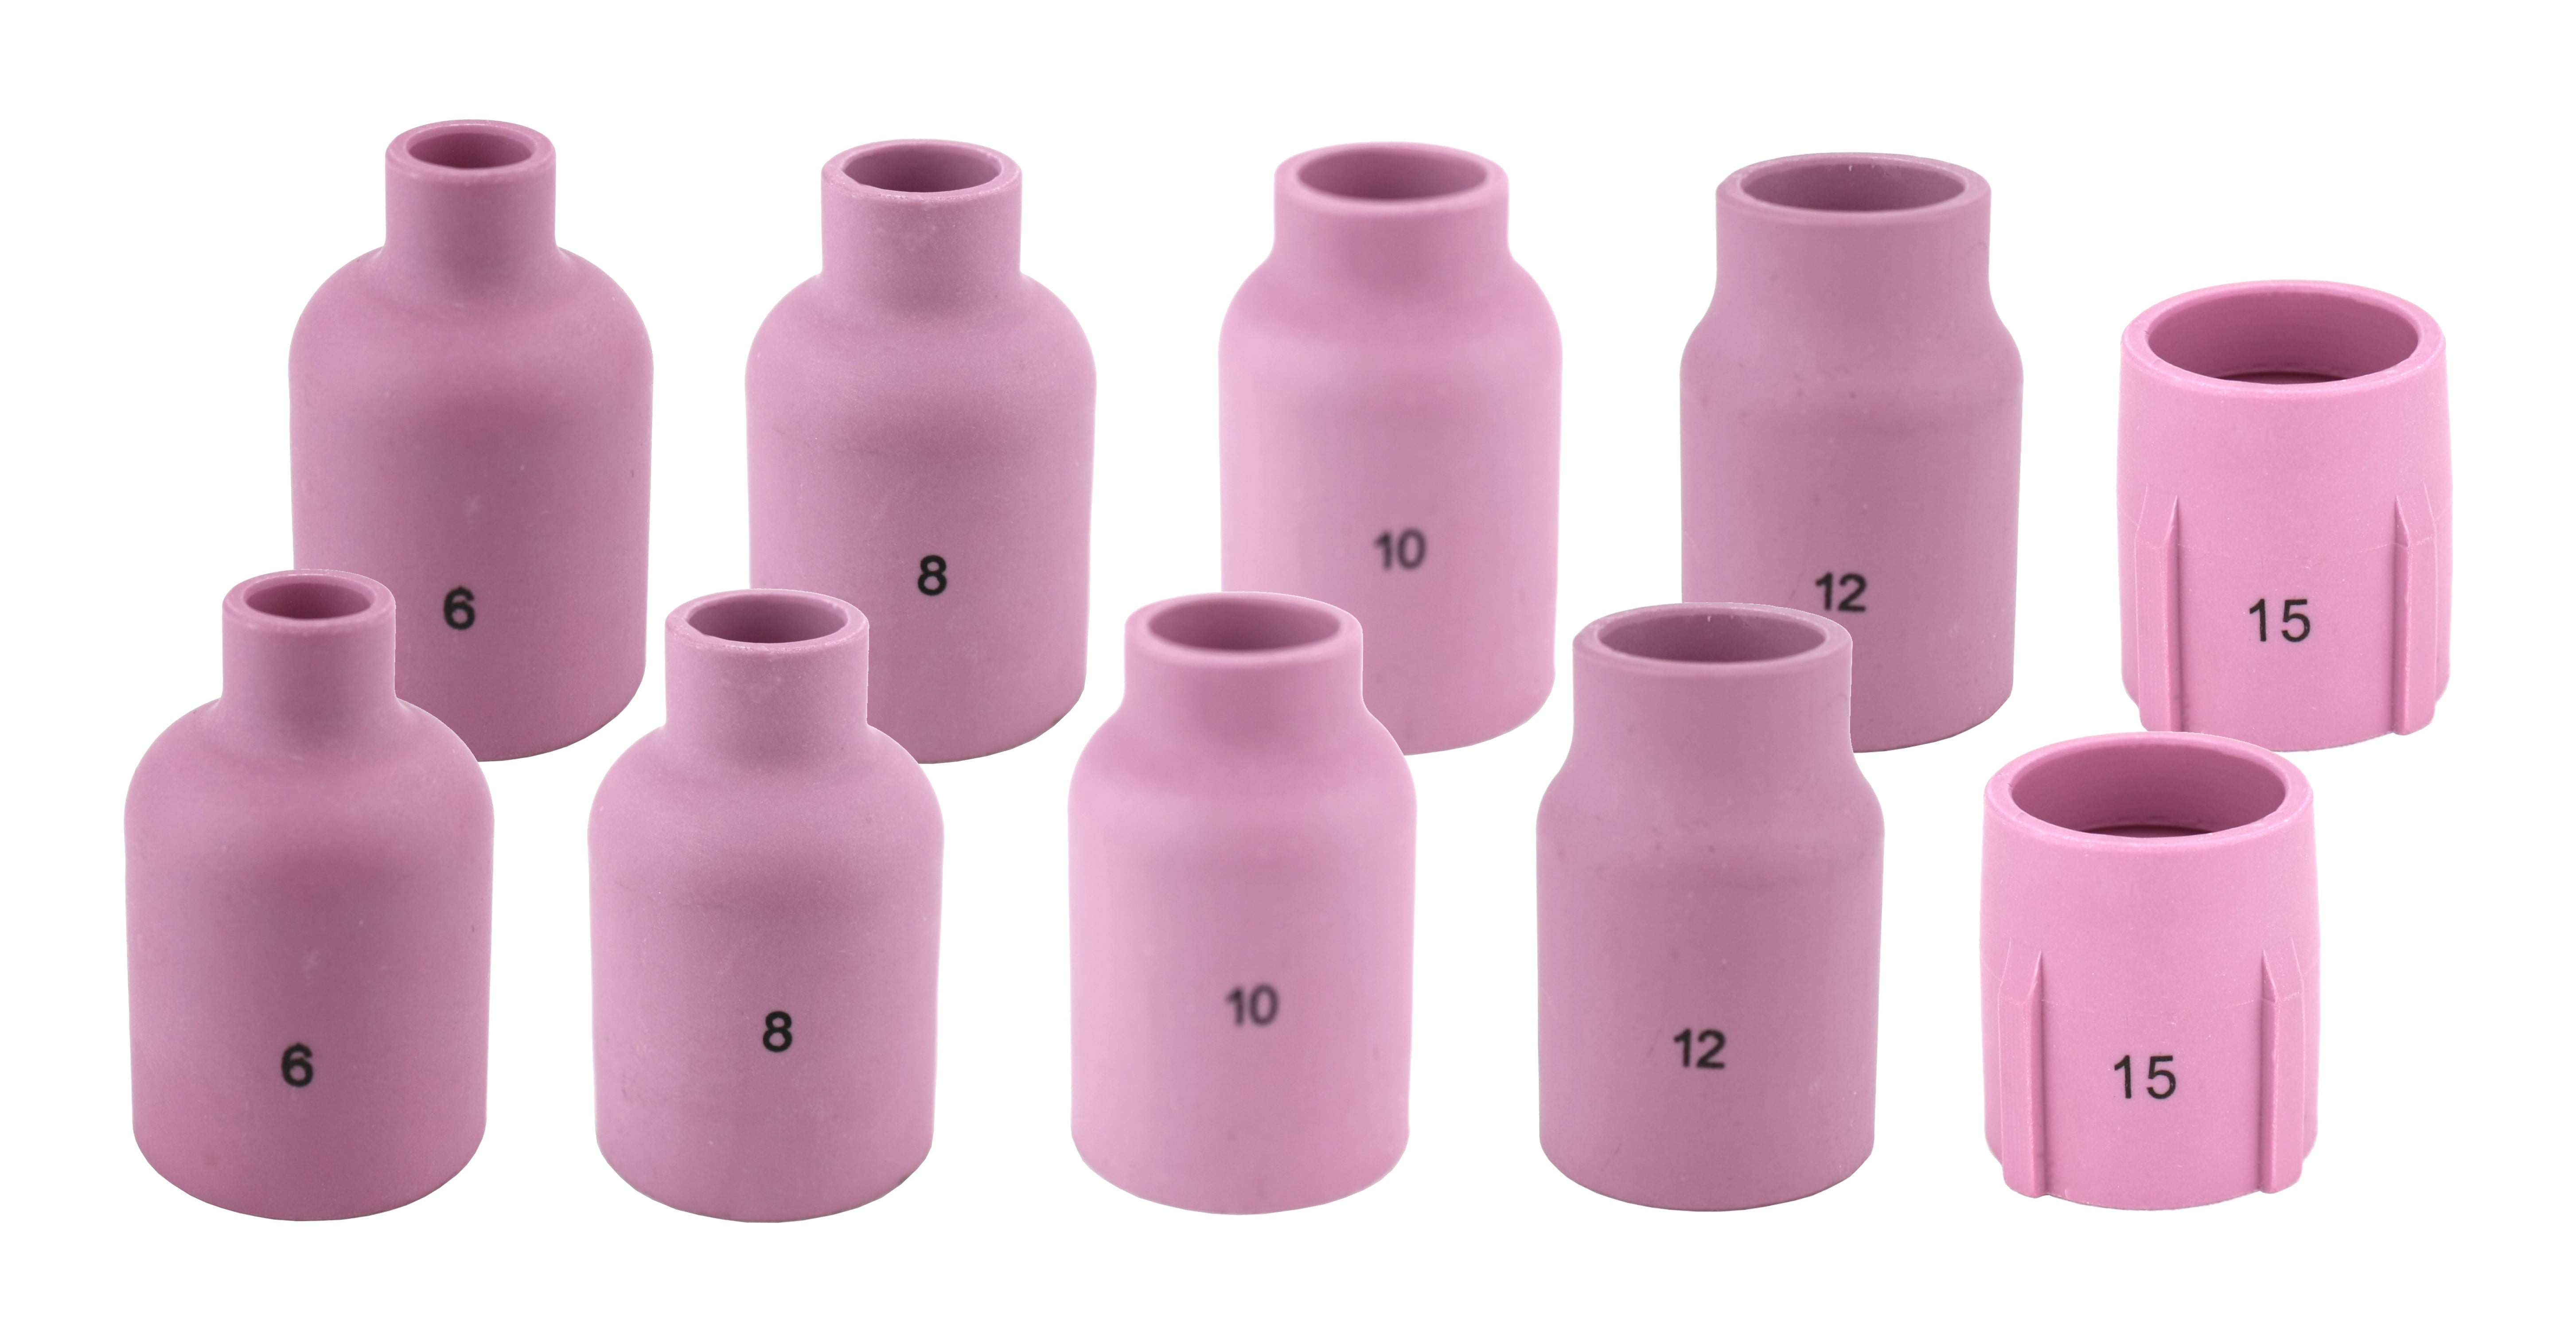 TIG Aluminia Nozzle Ceramic Cup Long 53N61SL 8L 1/2 for SR WP 9 20 25 TIG Welding Torch 10pk 